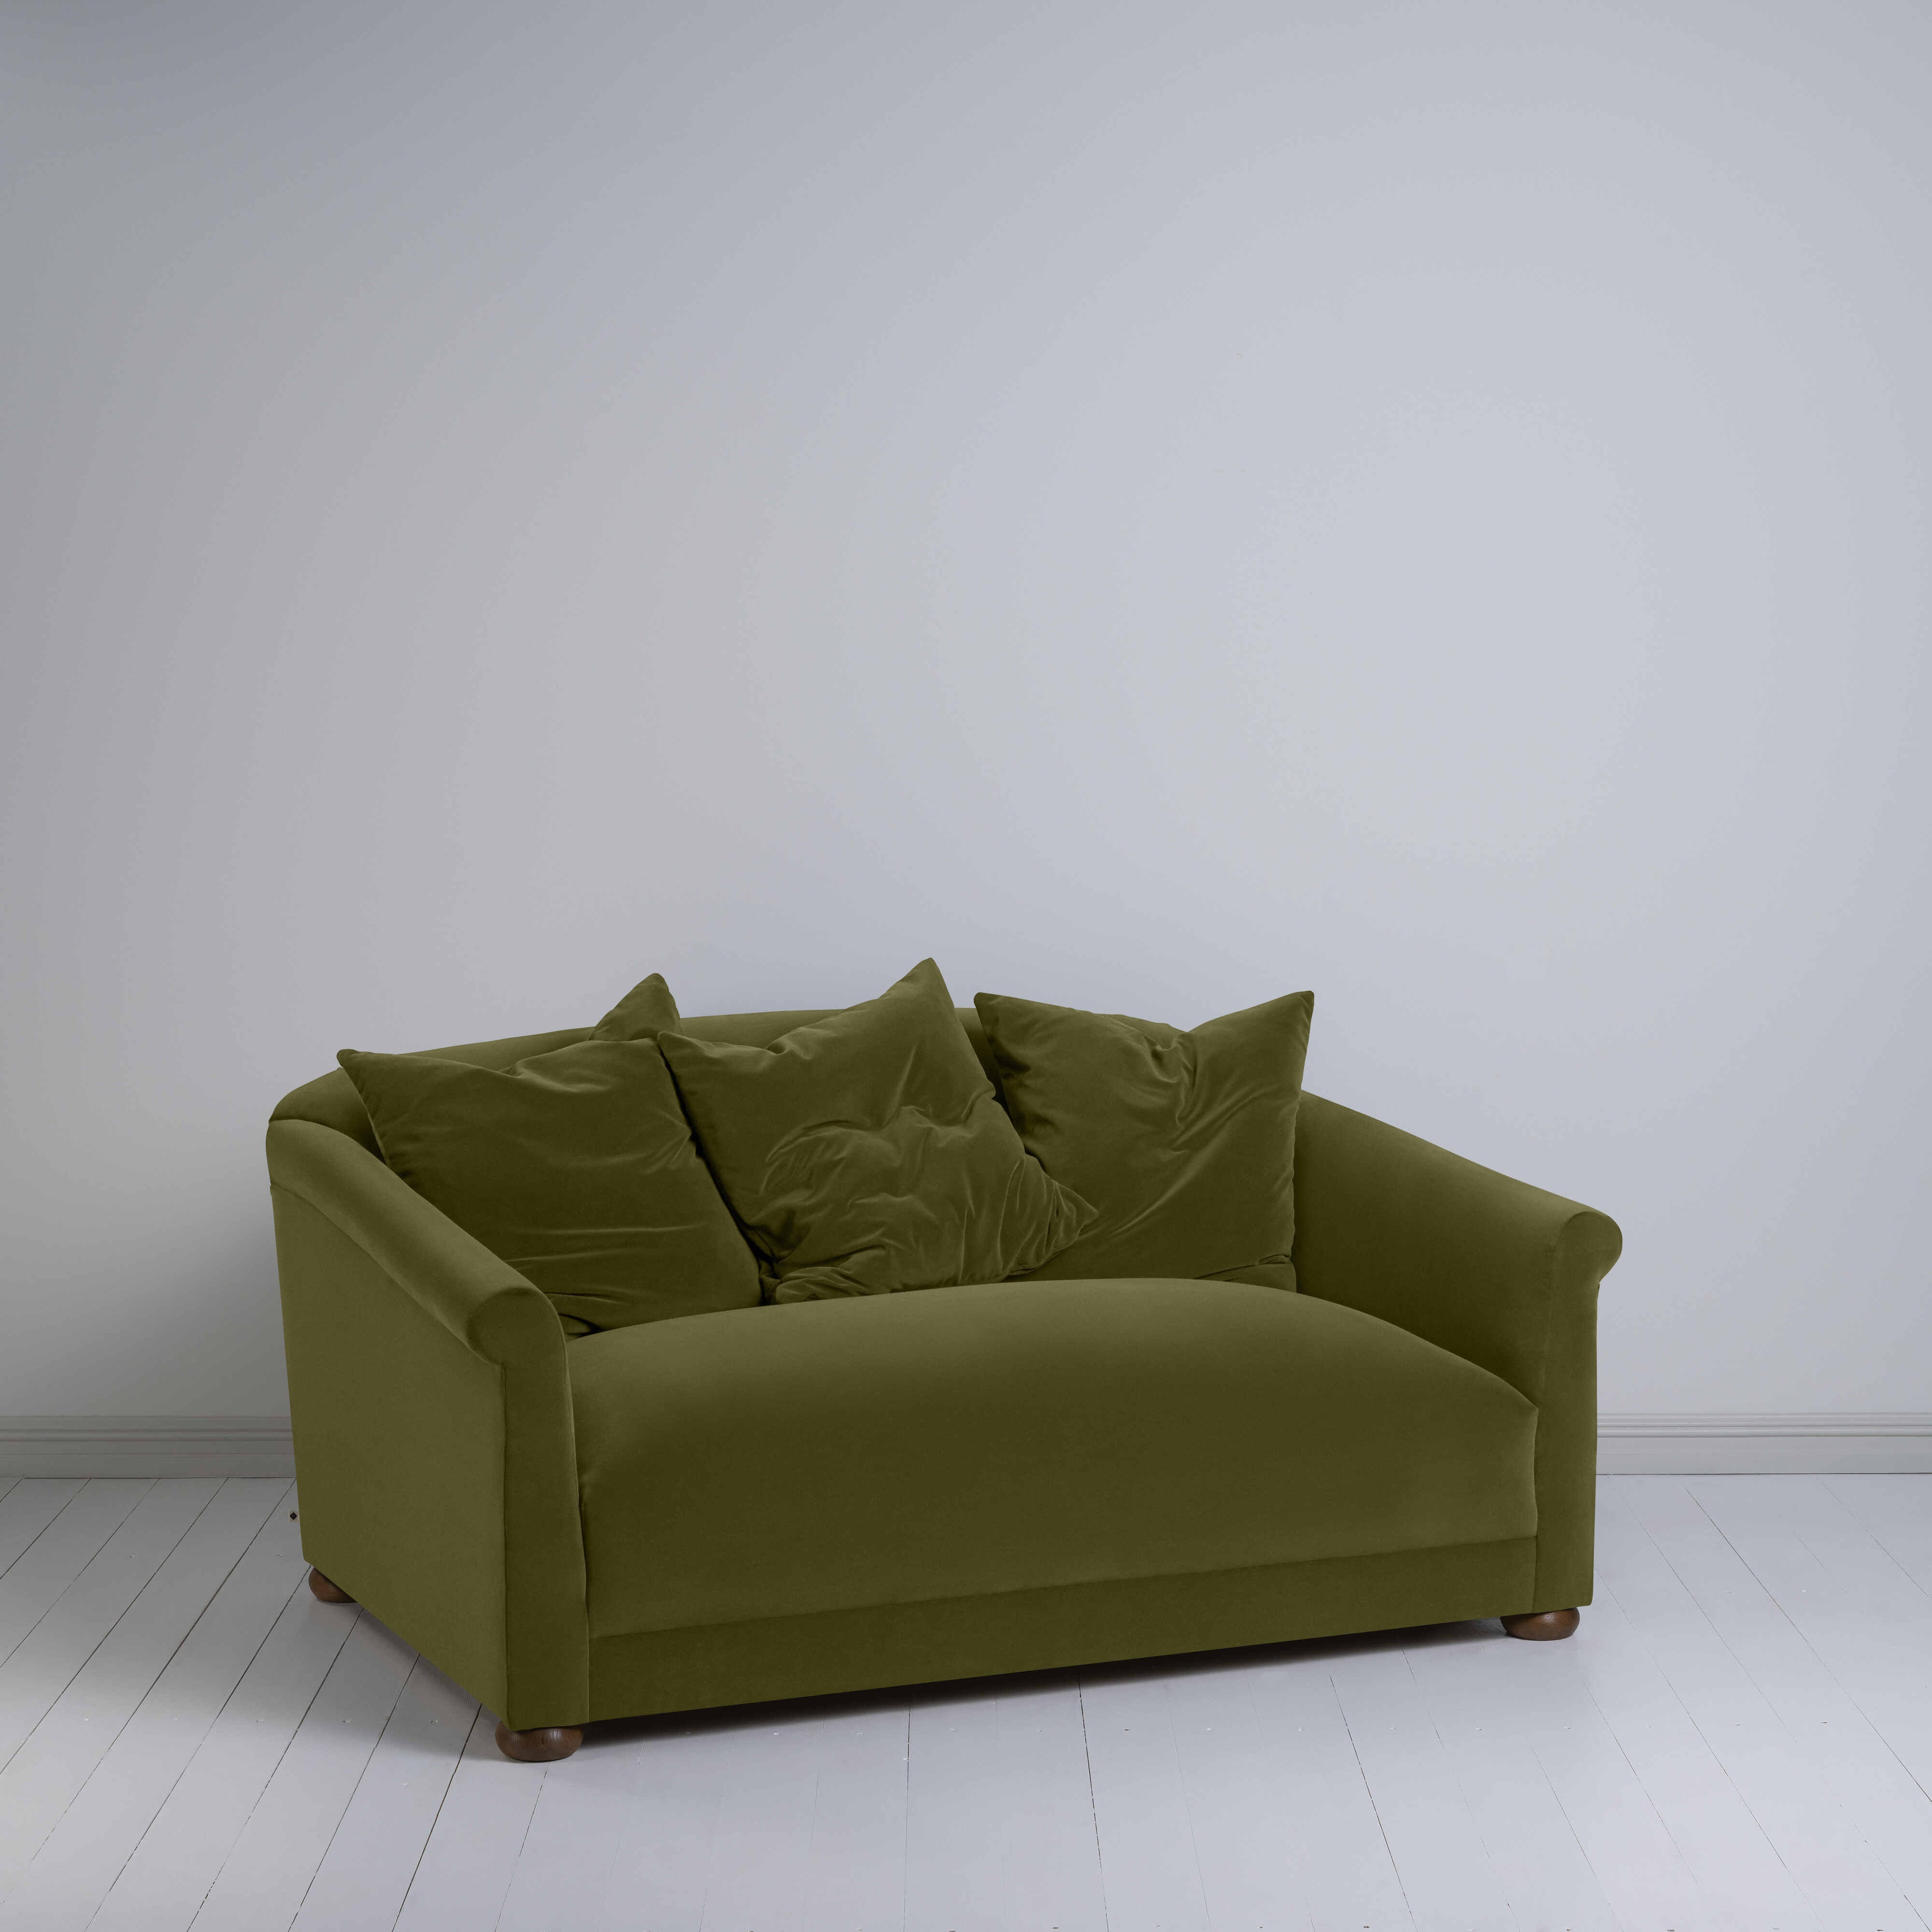  More the Merrier 2 Seater Sofa in Intelligent Velvet Lawn 